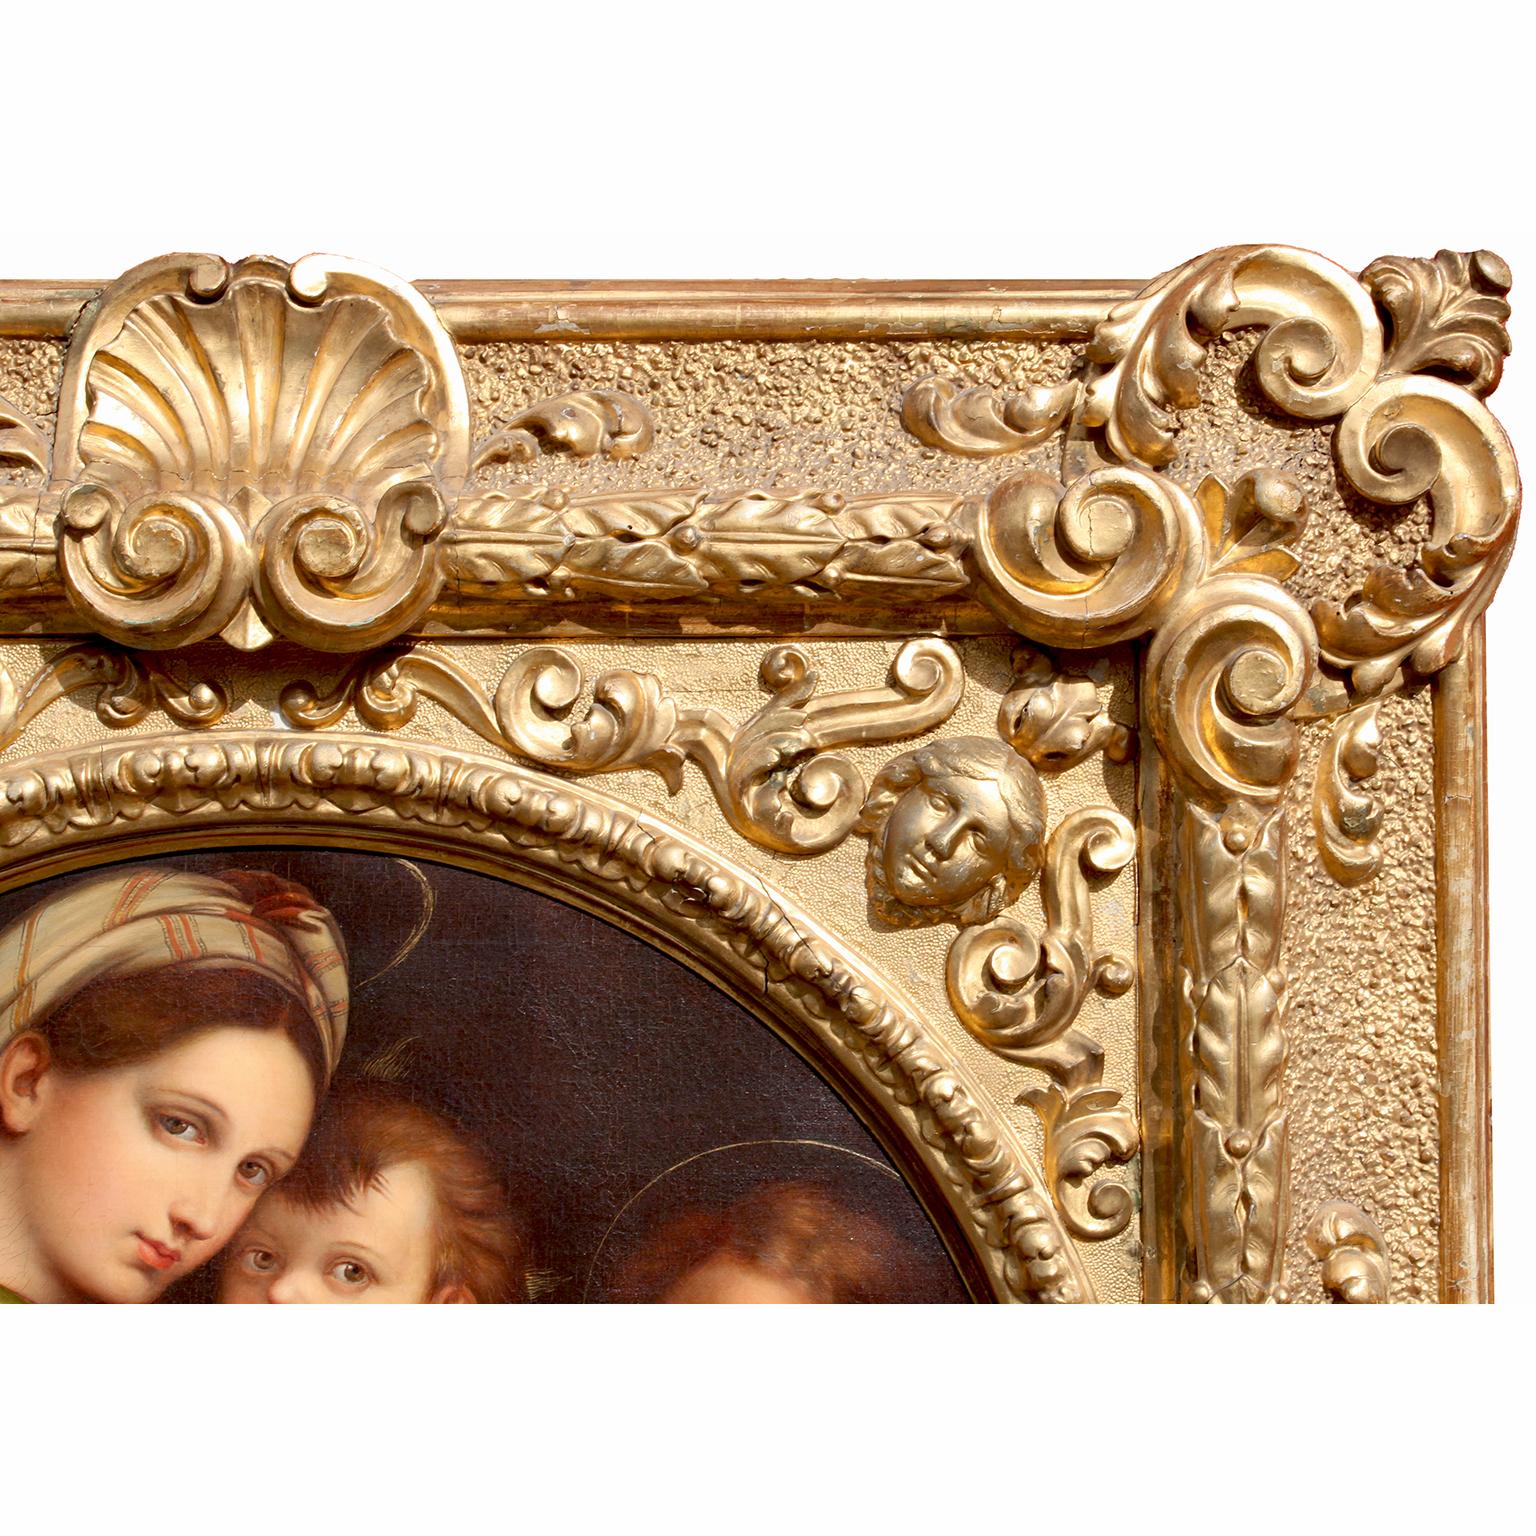 Baroque After Raffaello Sanzio 1483-1520 Raphael La Madonna Della Seggiola Oil on Canvas For Sale